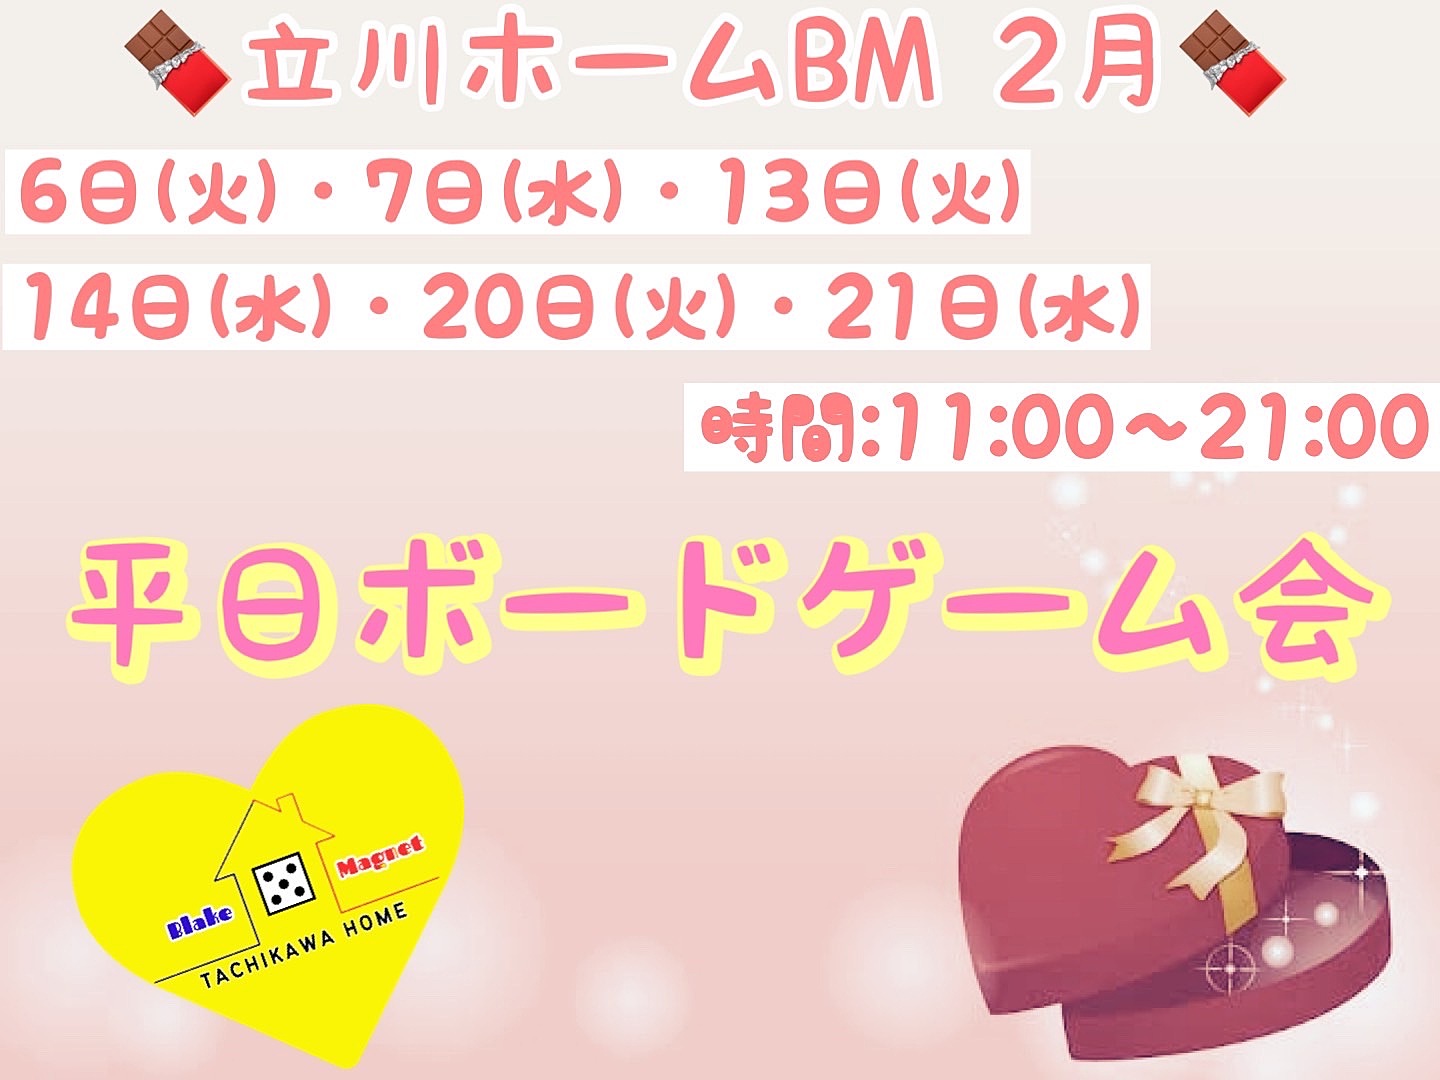 2月20日(火) 平日ボードゲーム会.vol18@🧲立川ホームBM🧲